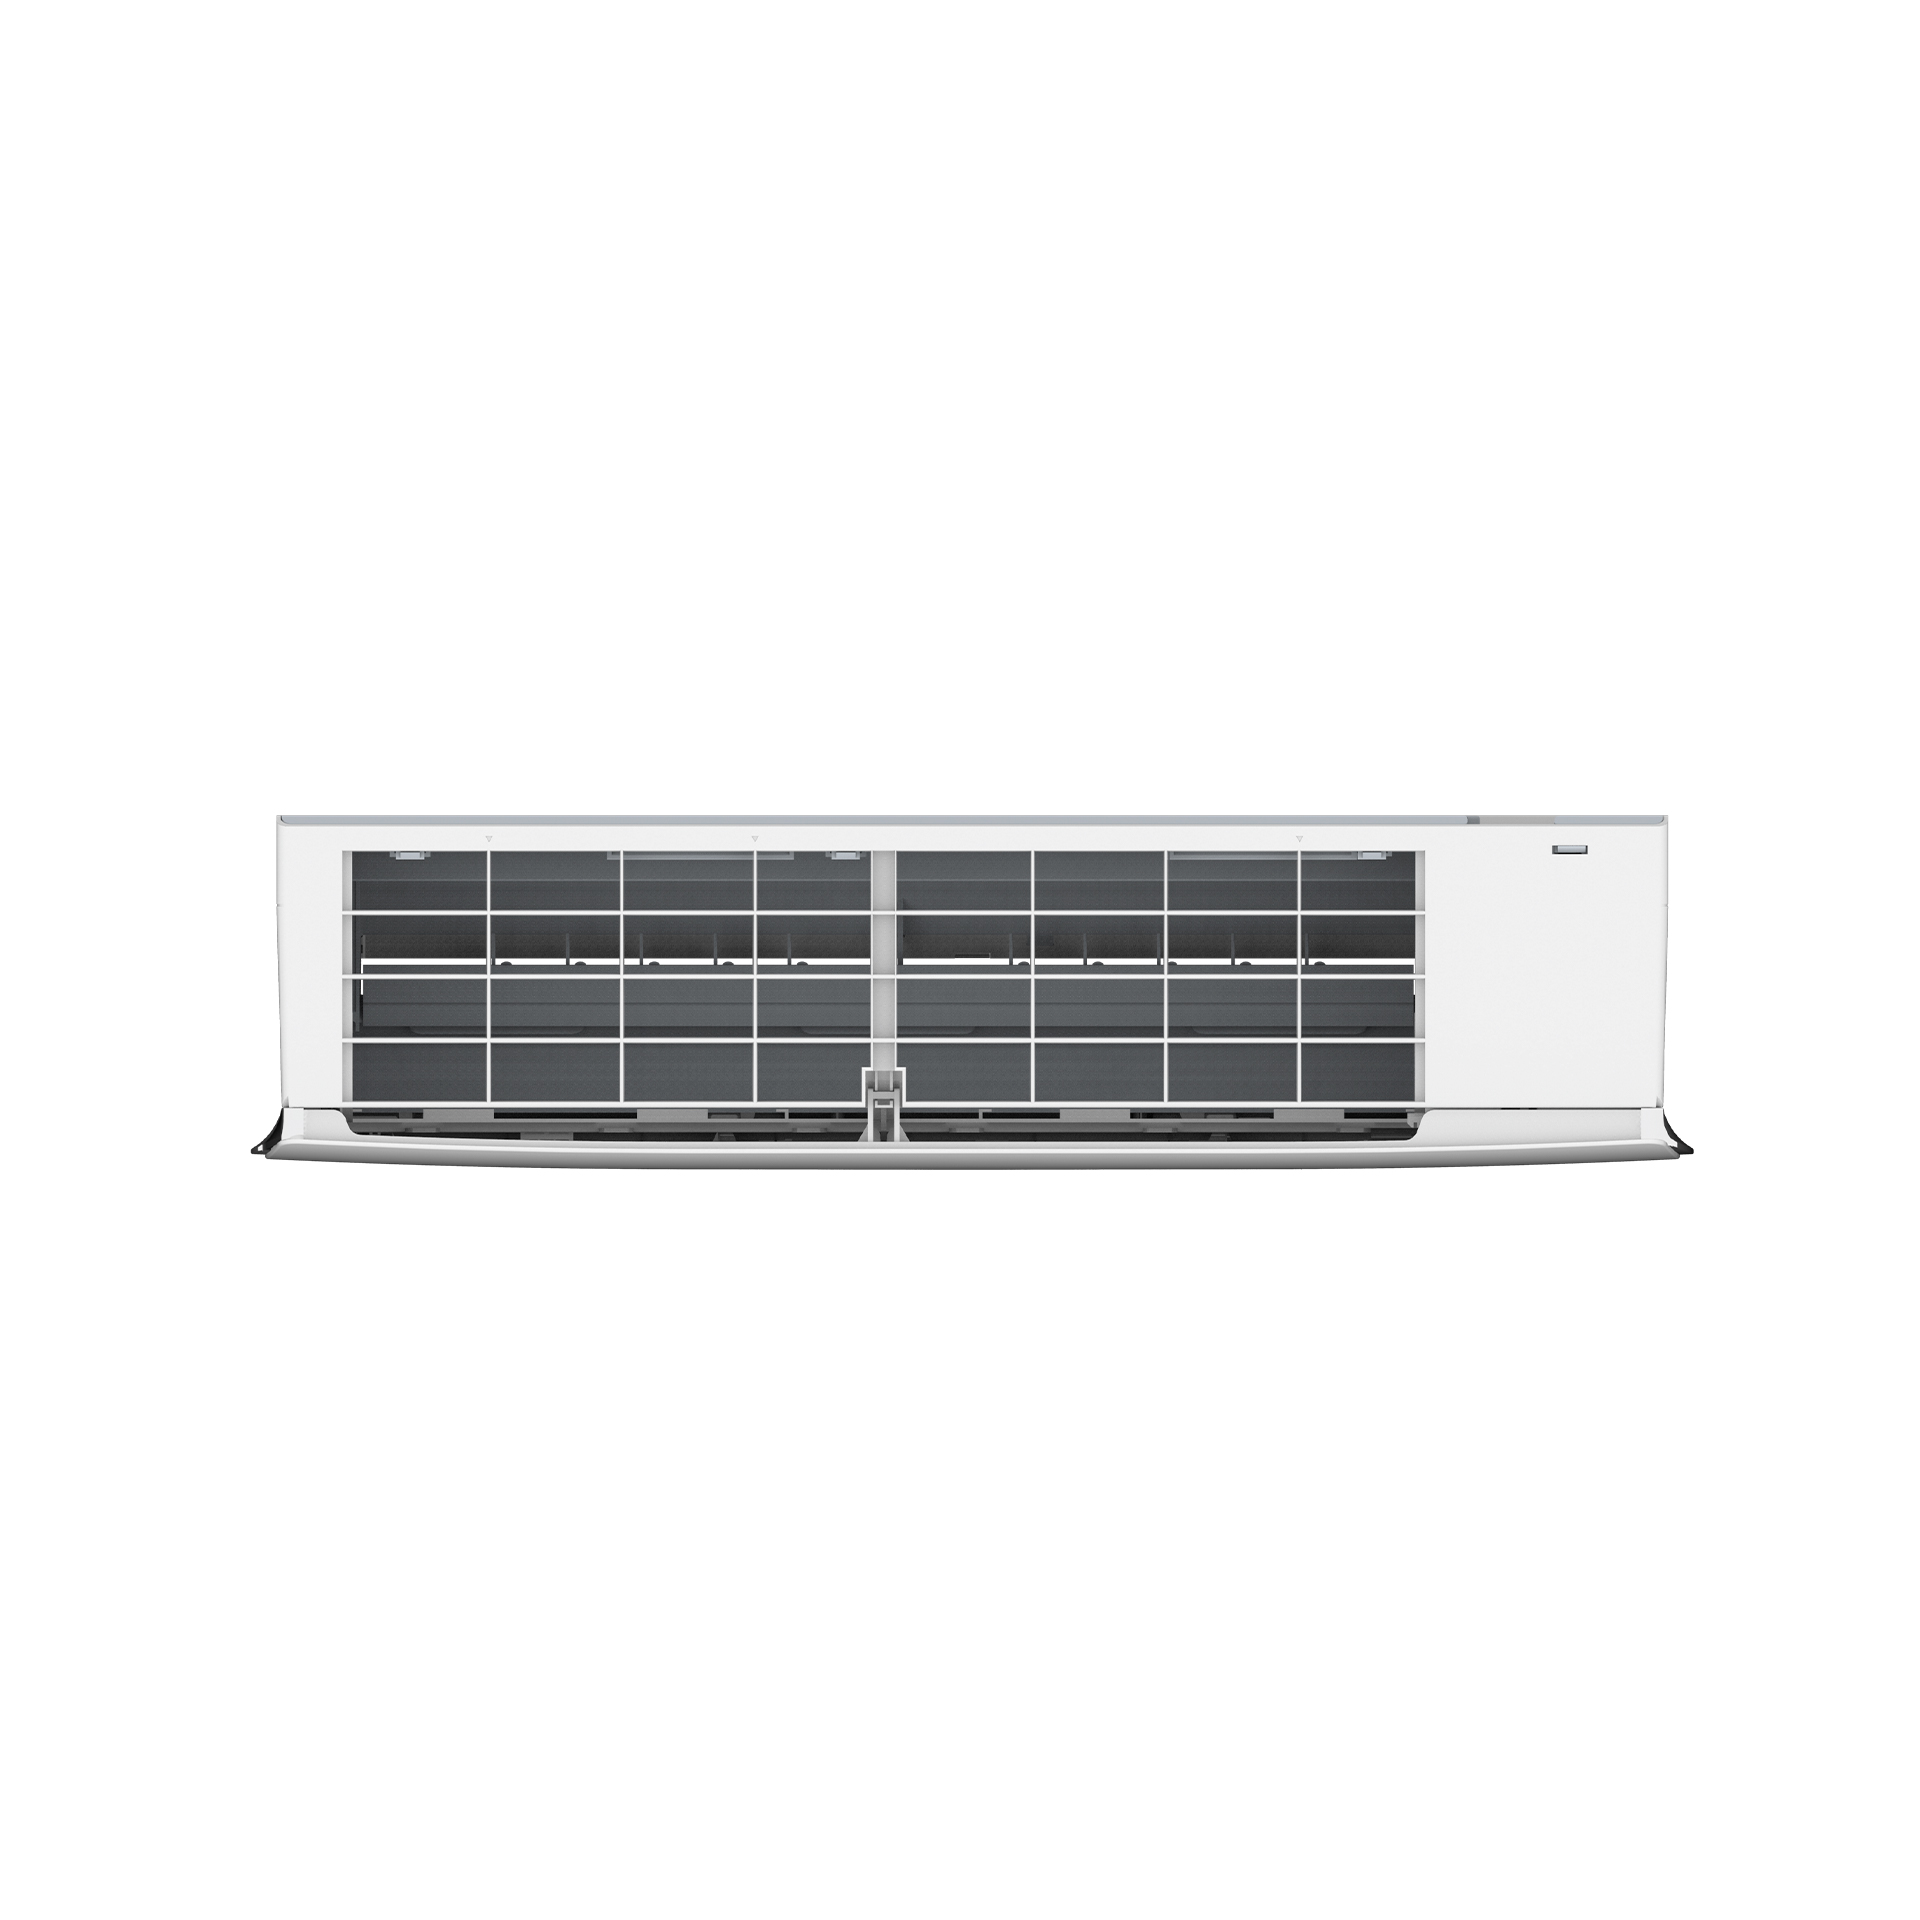 2 Ton Air Conditioner OSDC-24QC– Inverter